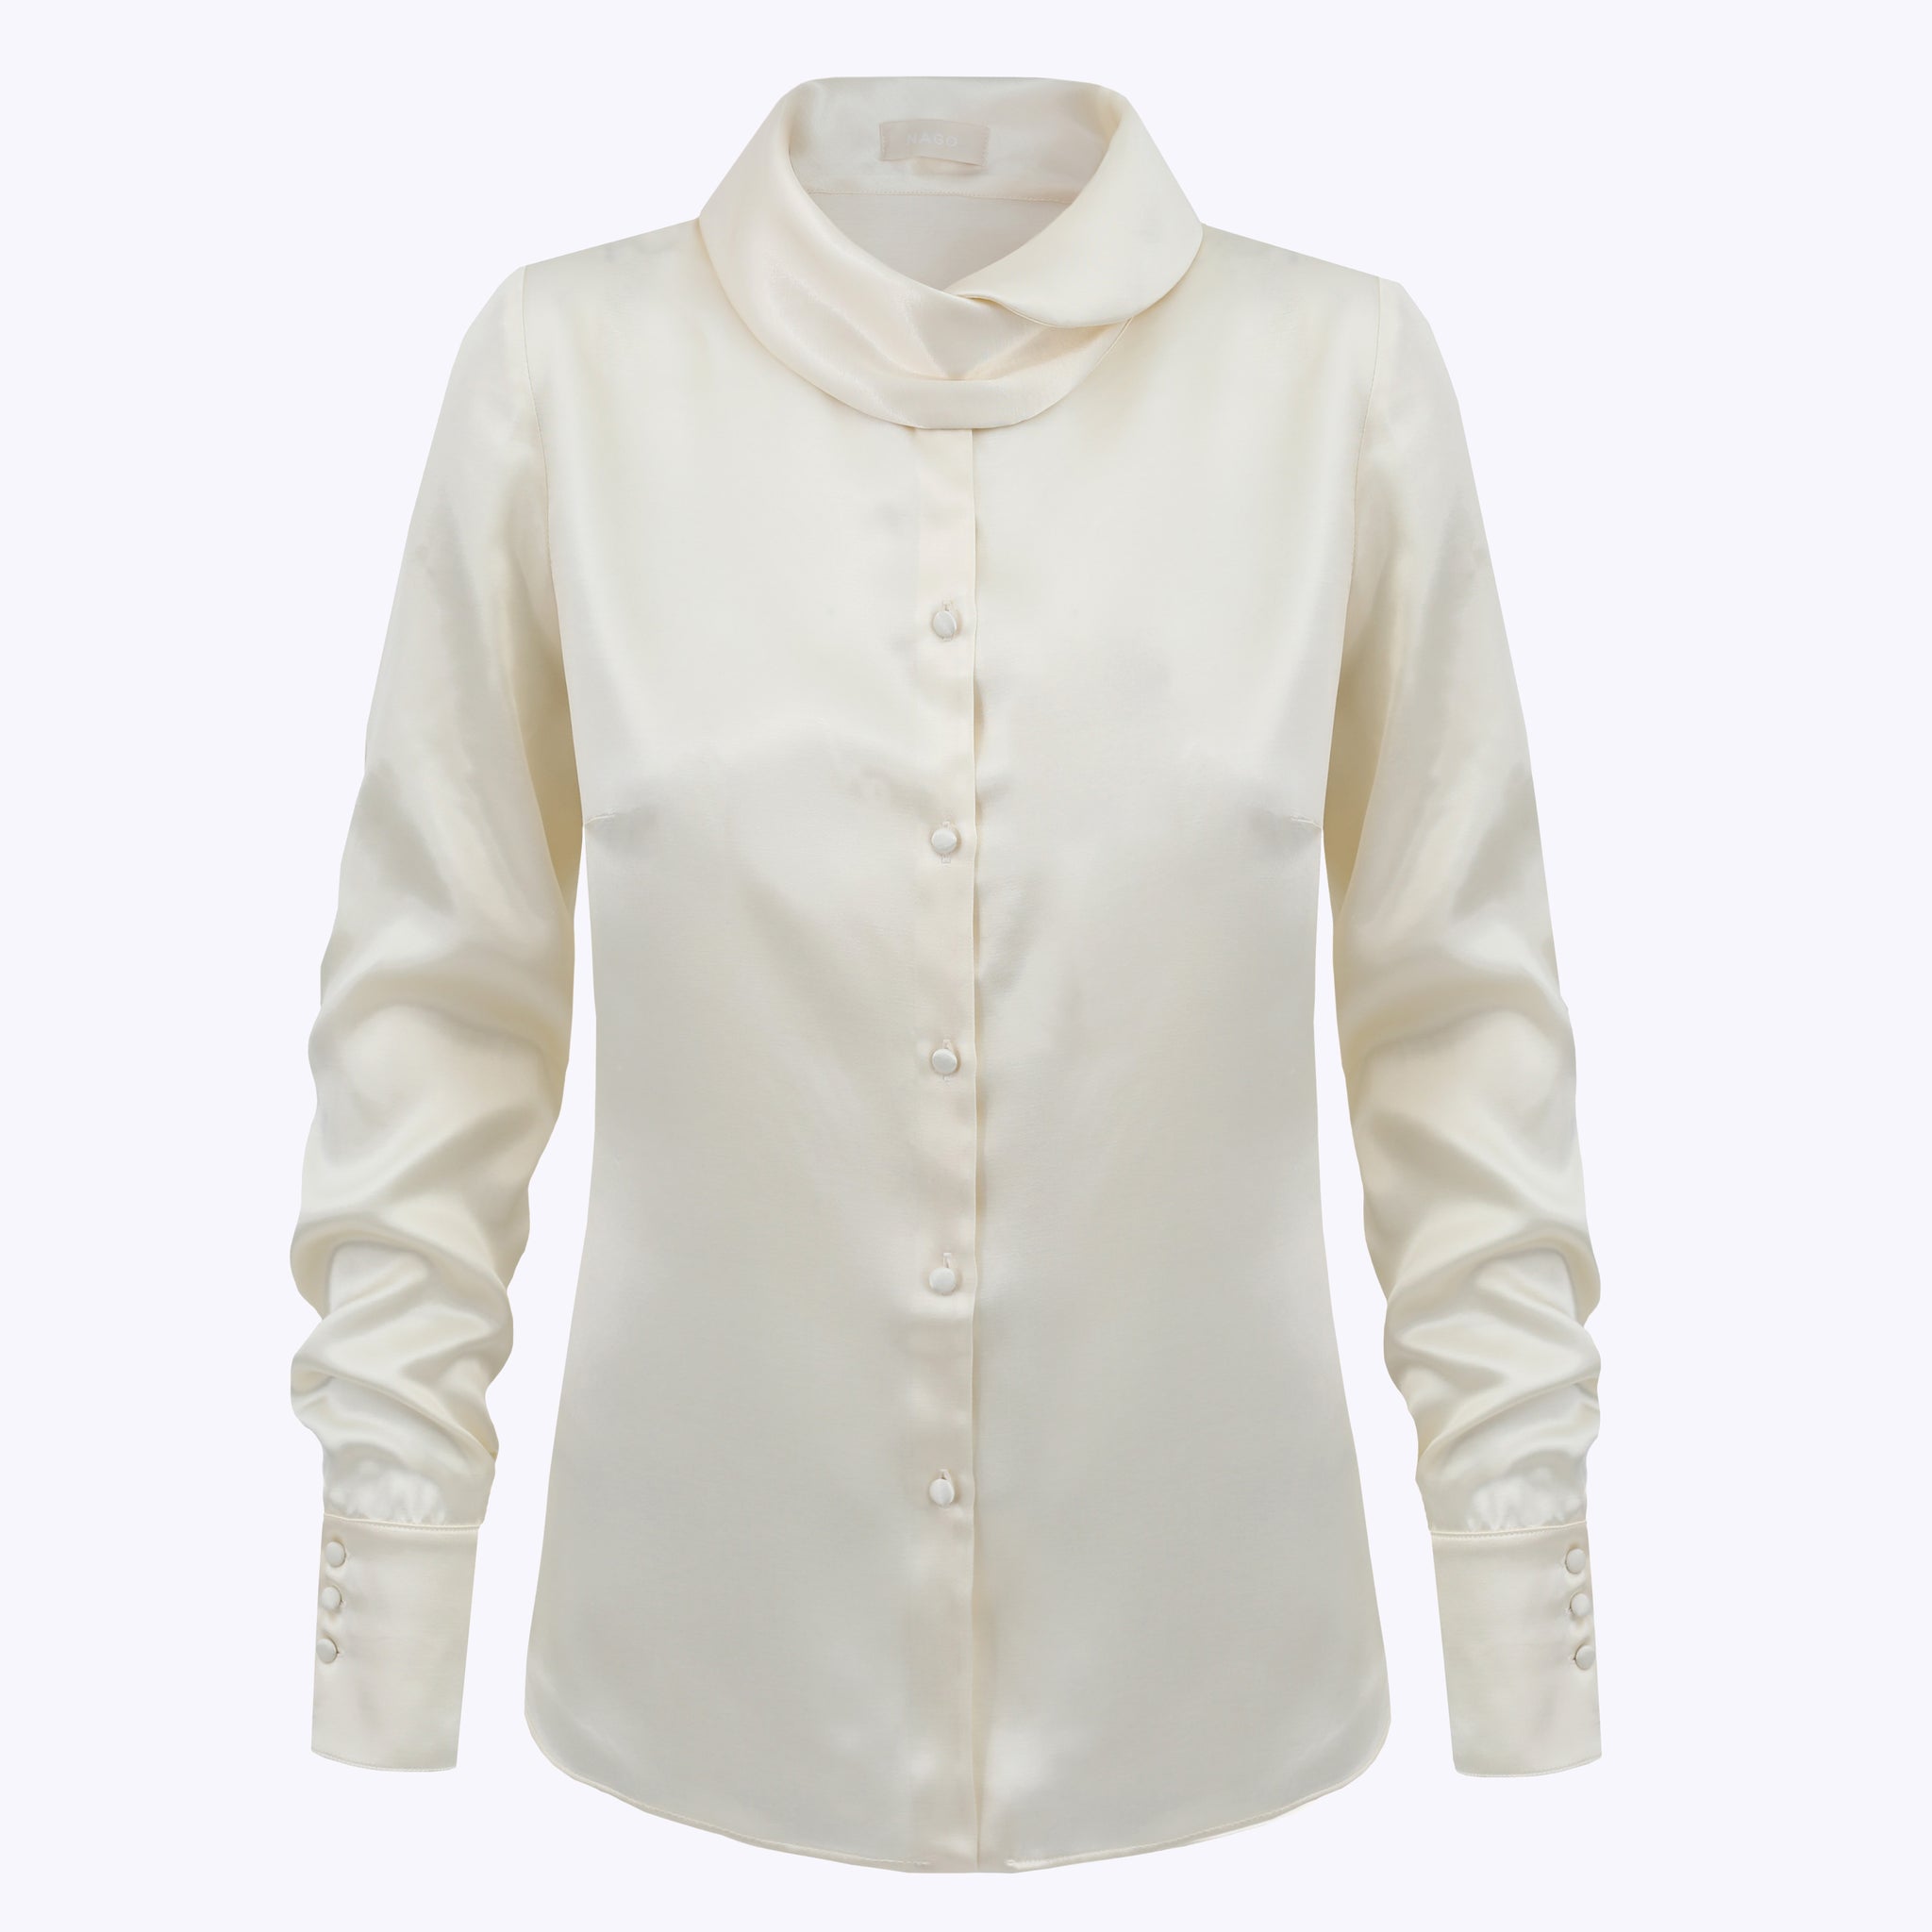 Shirt in viscose / 12 / 04 / cream white